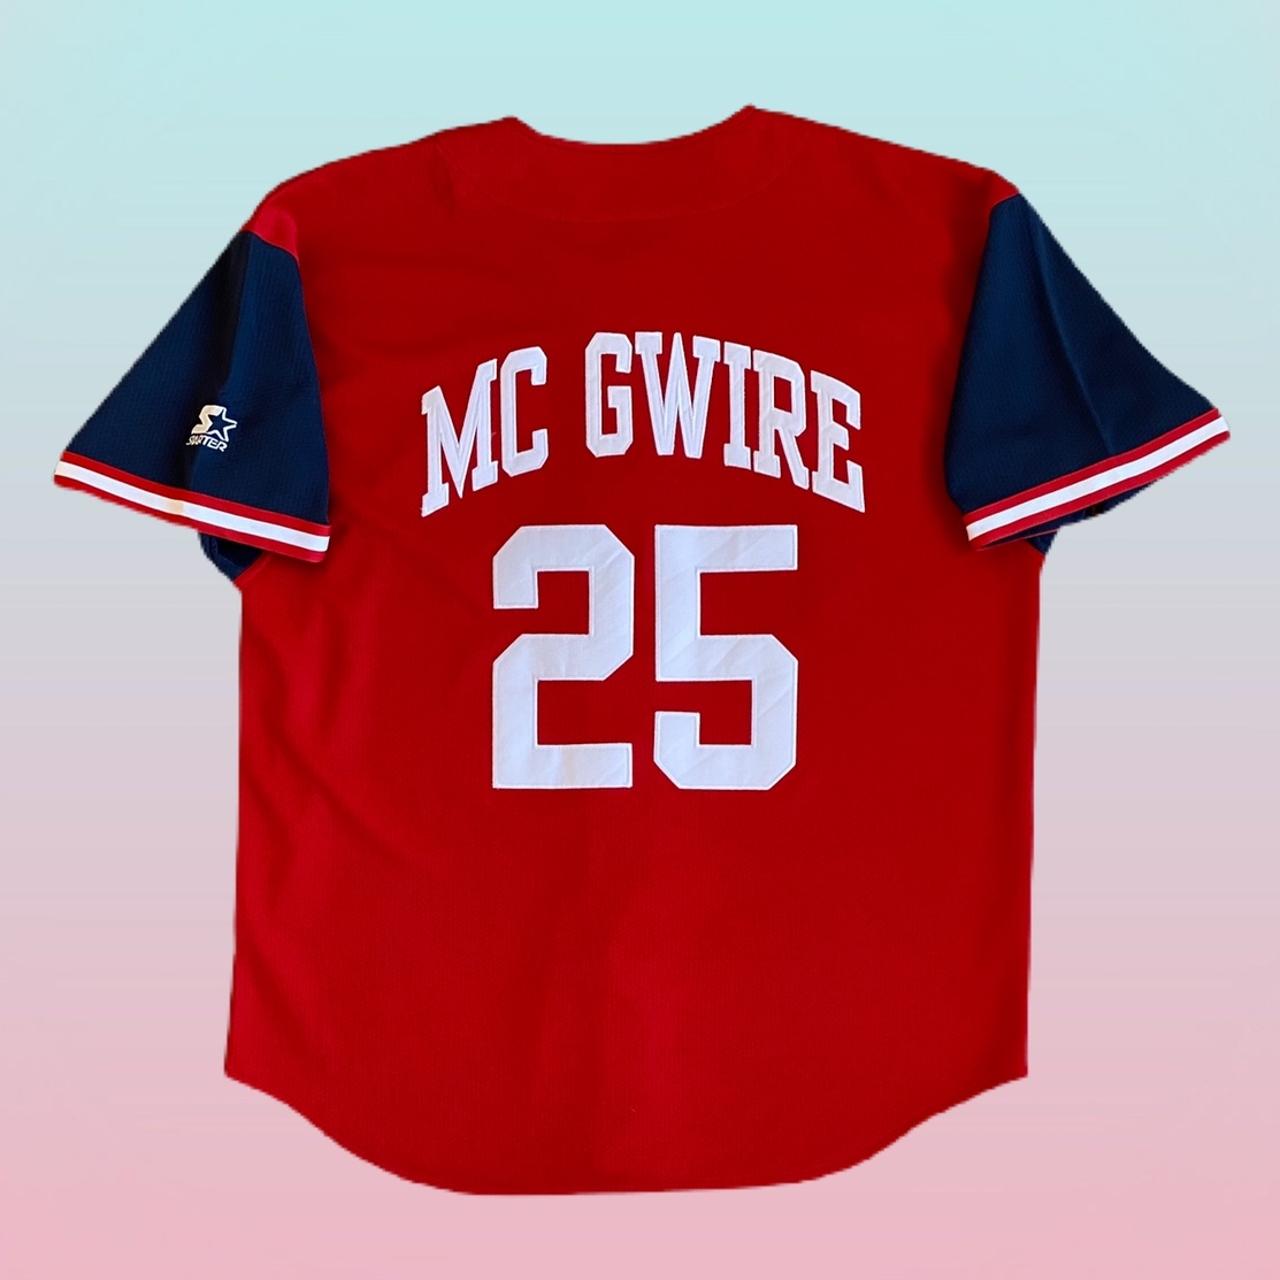 25 Mark McGwire jersey Stitched St. Louis Cardinals baseball